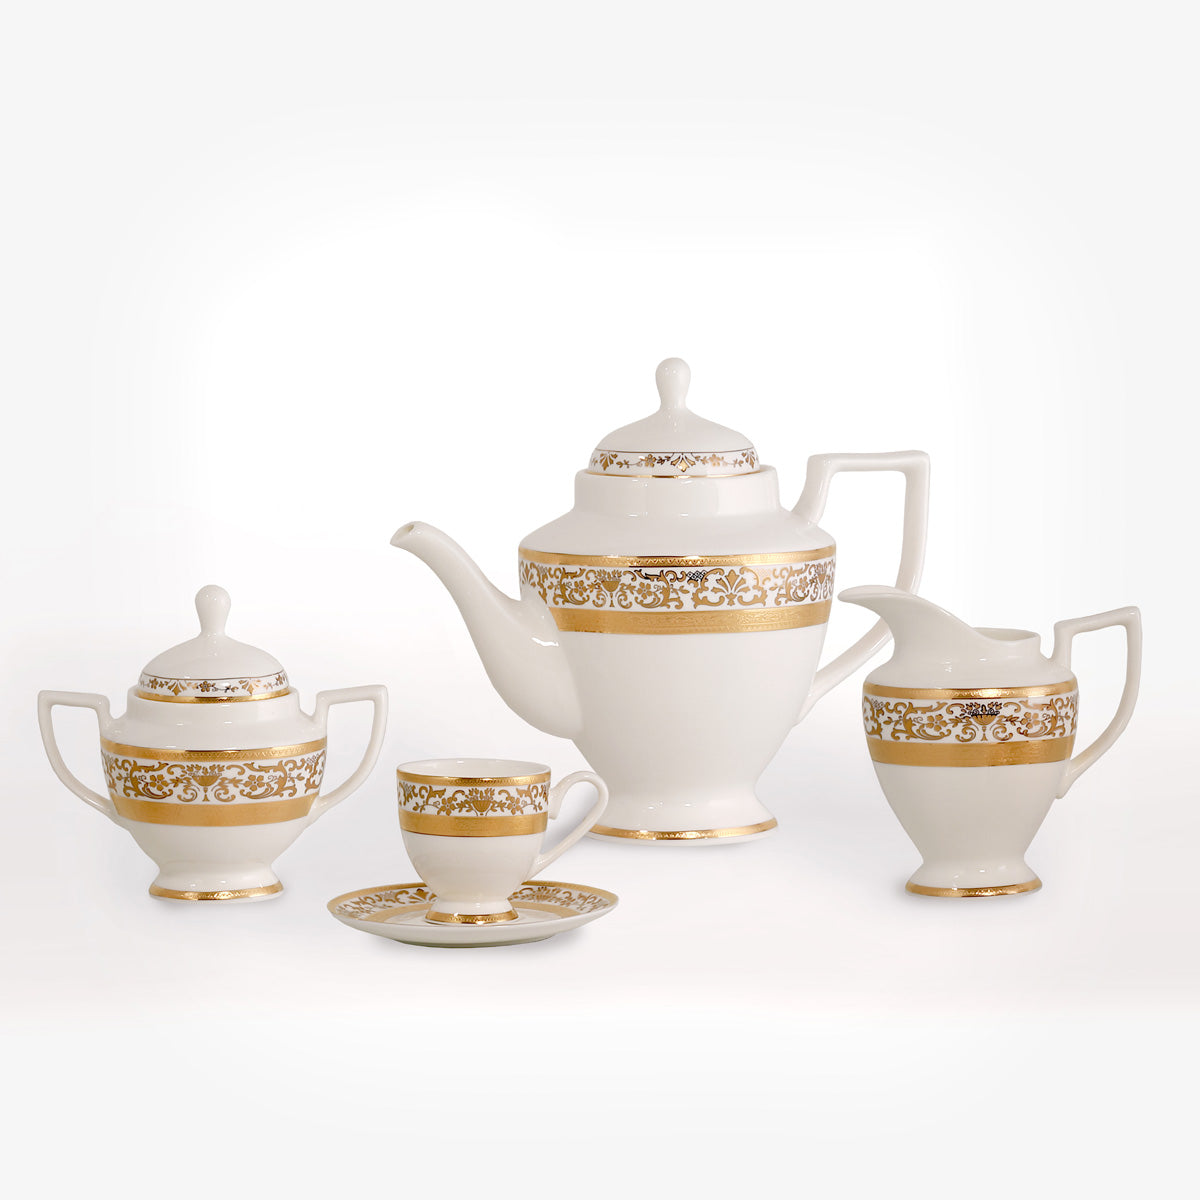 Servizio te e caffè con decoro classico in oro inciso in fine porcellana trasparente bone china - Prestige